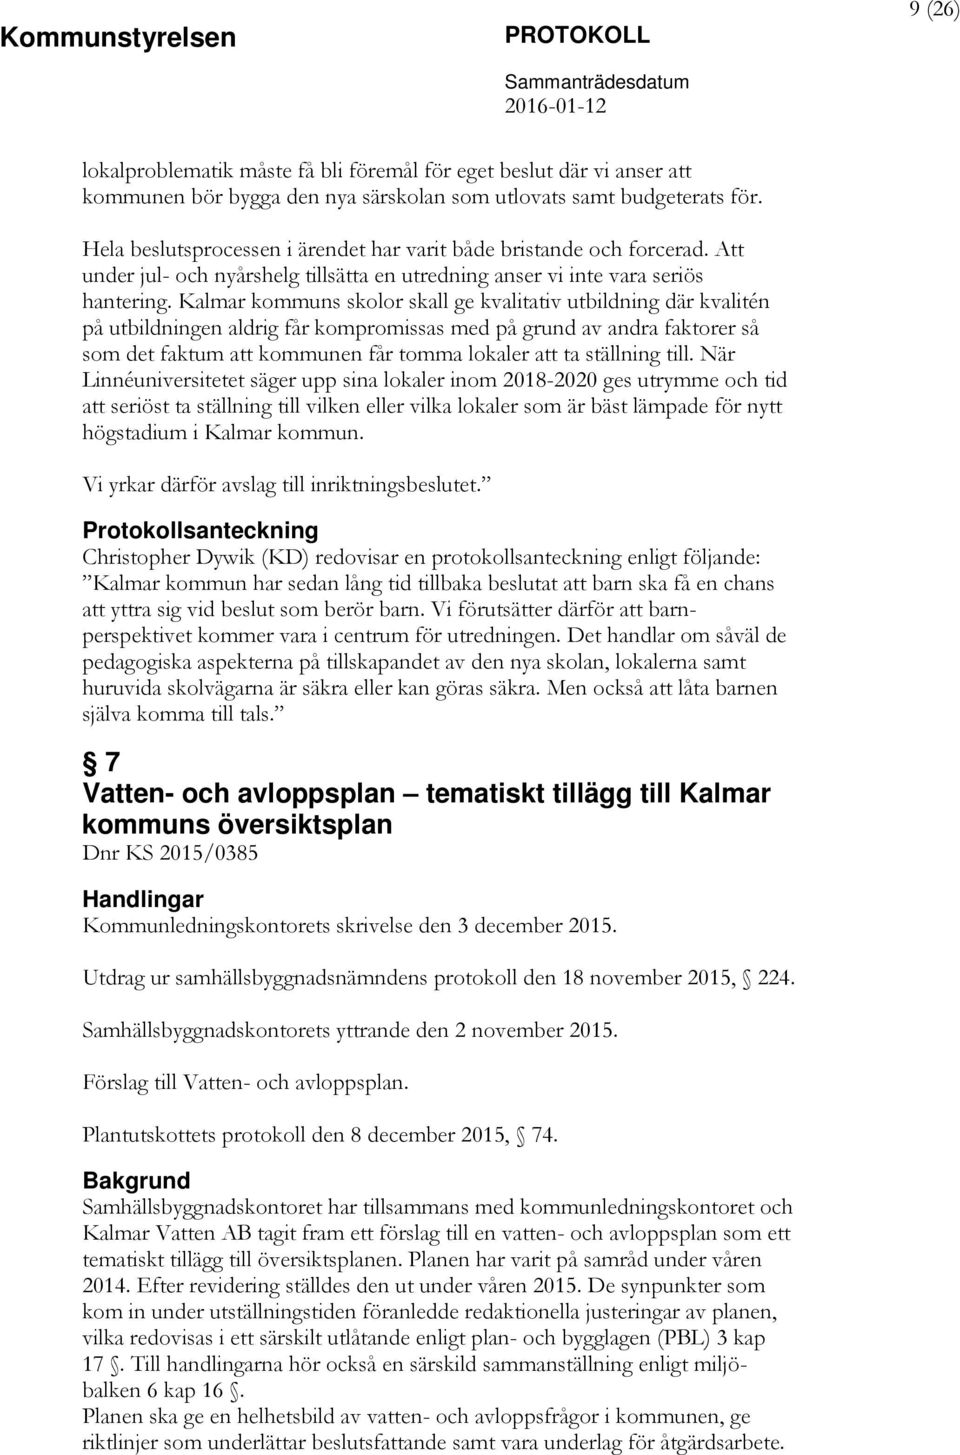 Kalmar kommuns skolor skall ge kvalitativ utbildning där kvalitén på utbildningen aldrig får kompromissas med på grund av andra faktorer så som det faktum att kommunen får tomma lokaler att ta